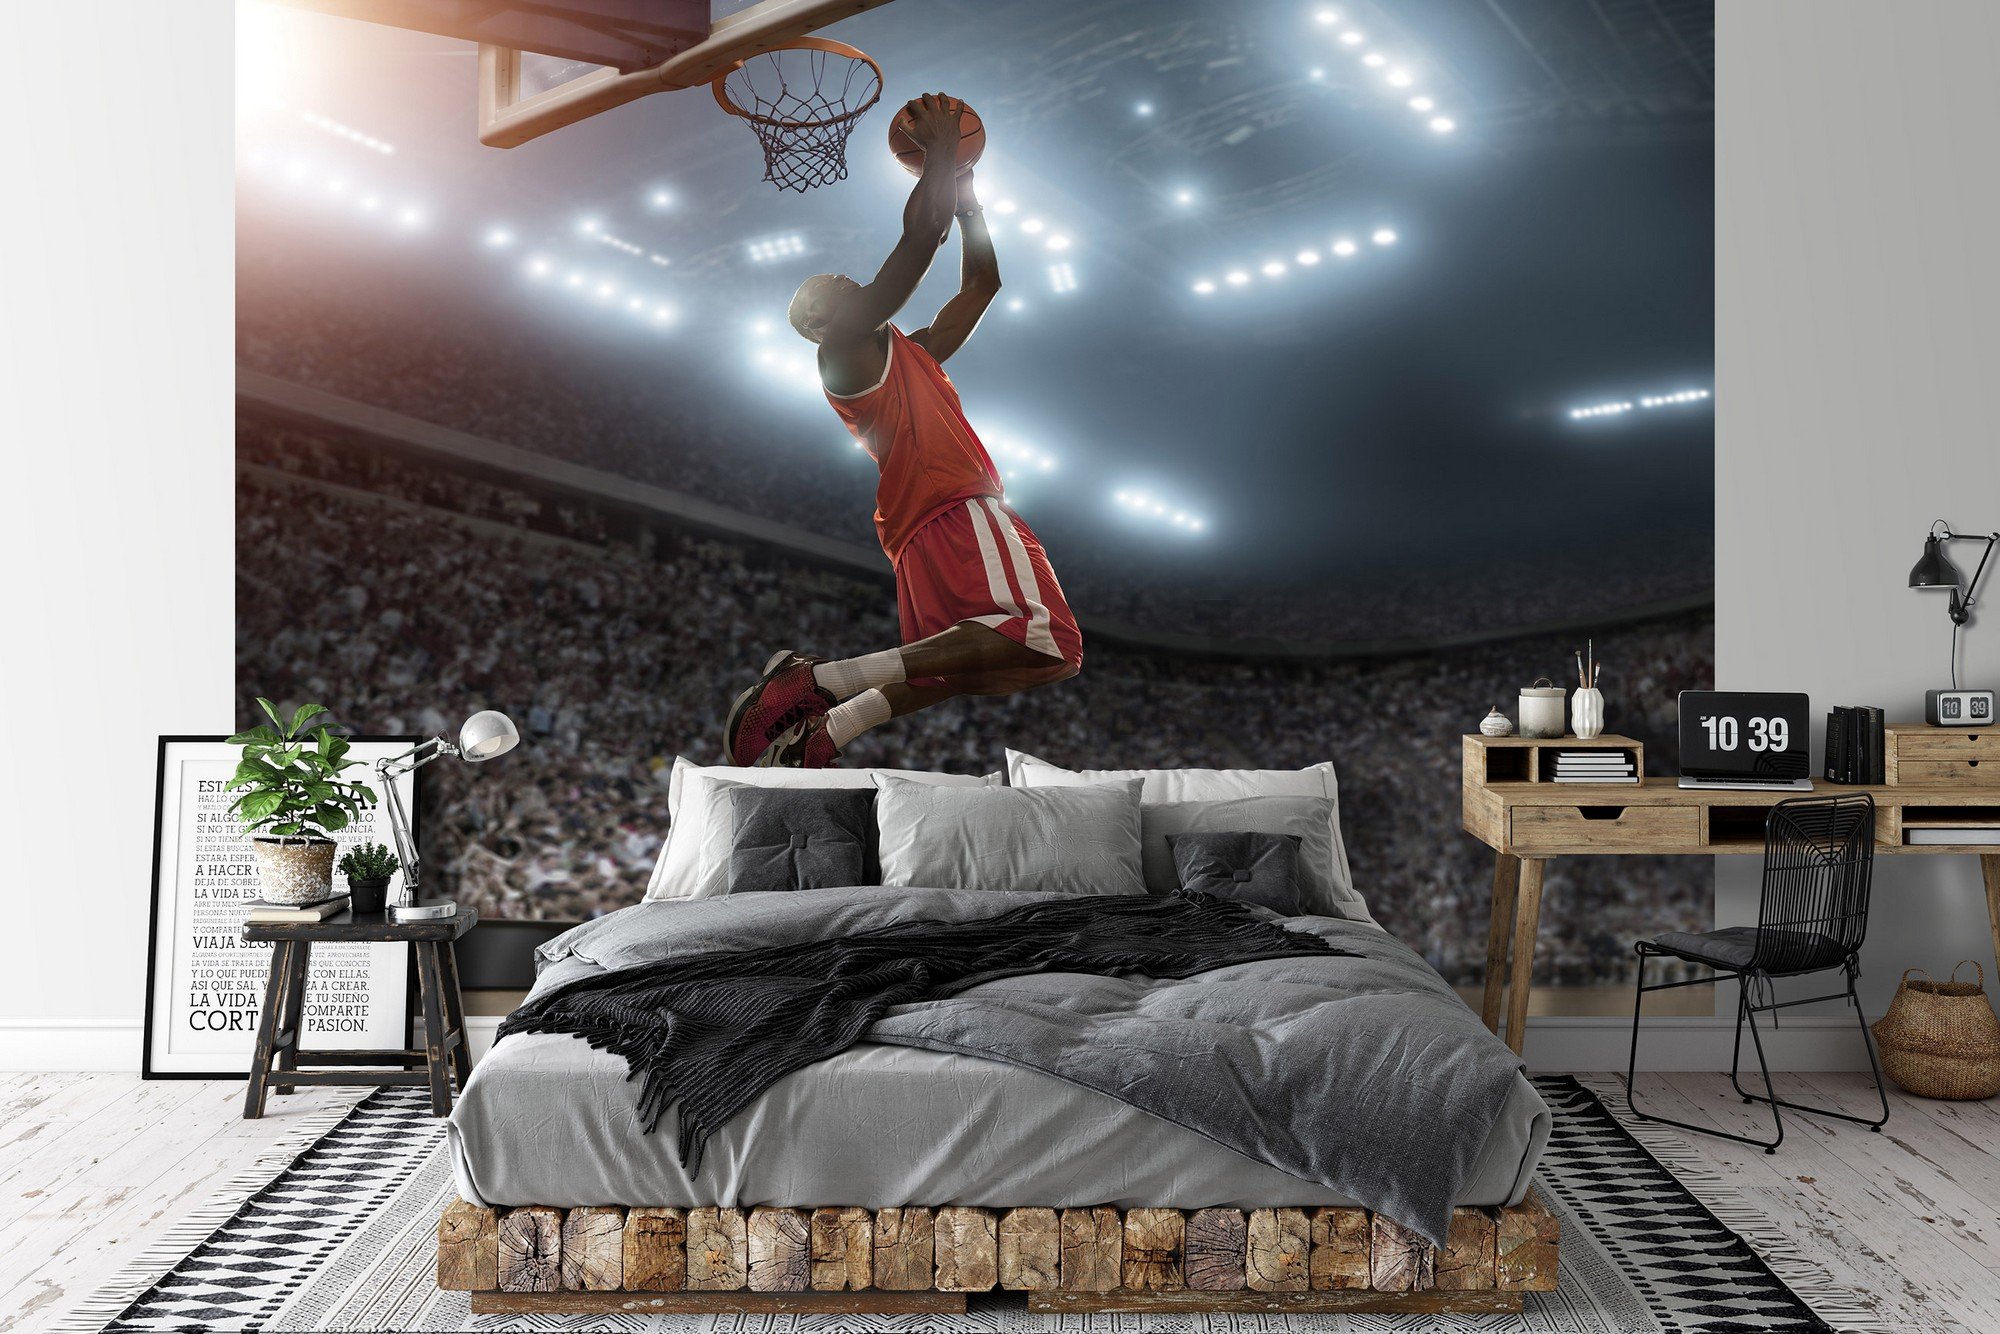 Vlies foto tapeta: Basketball player - 416x254 cm